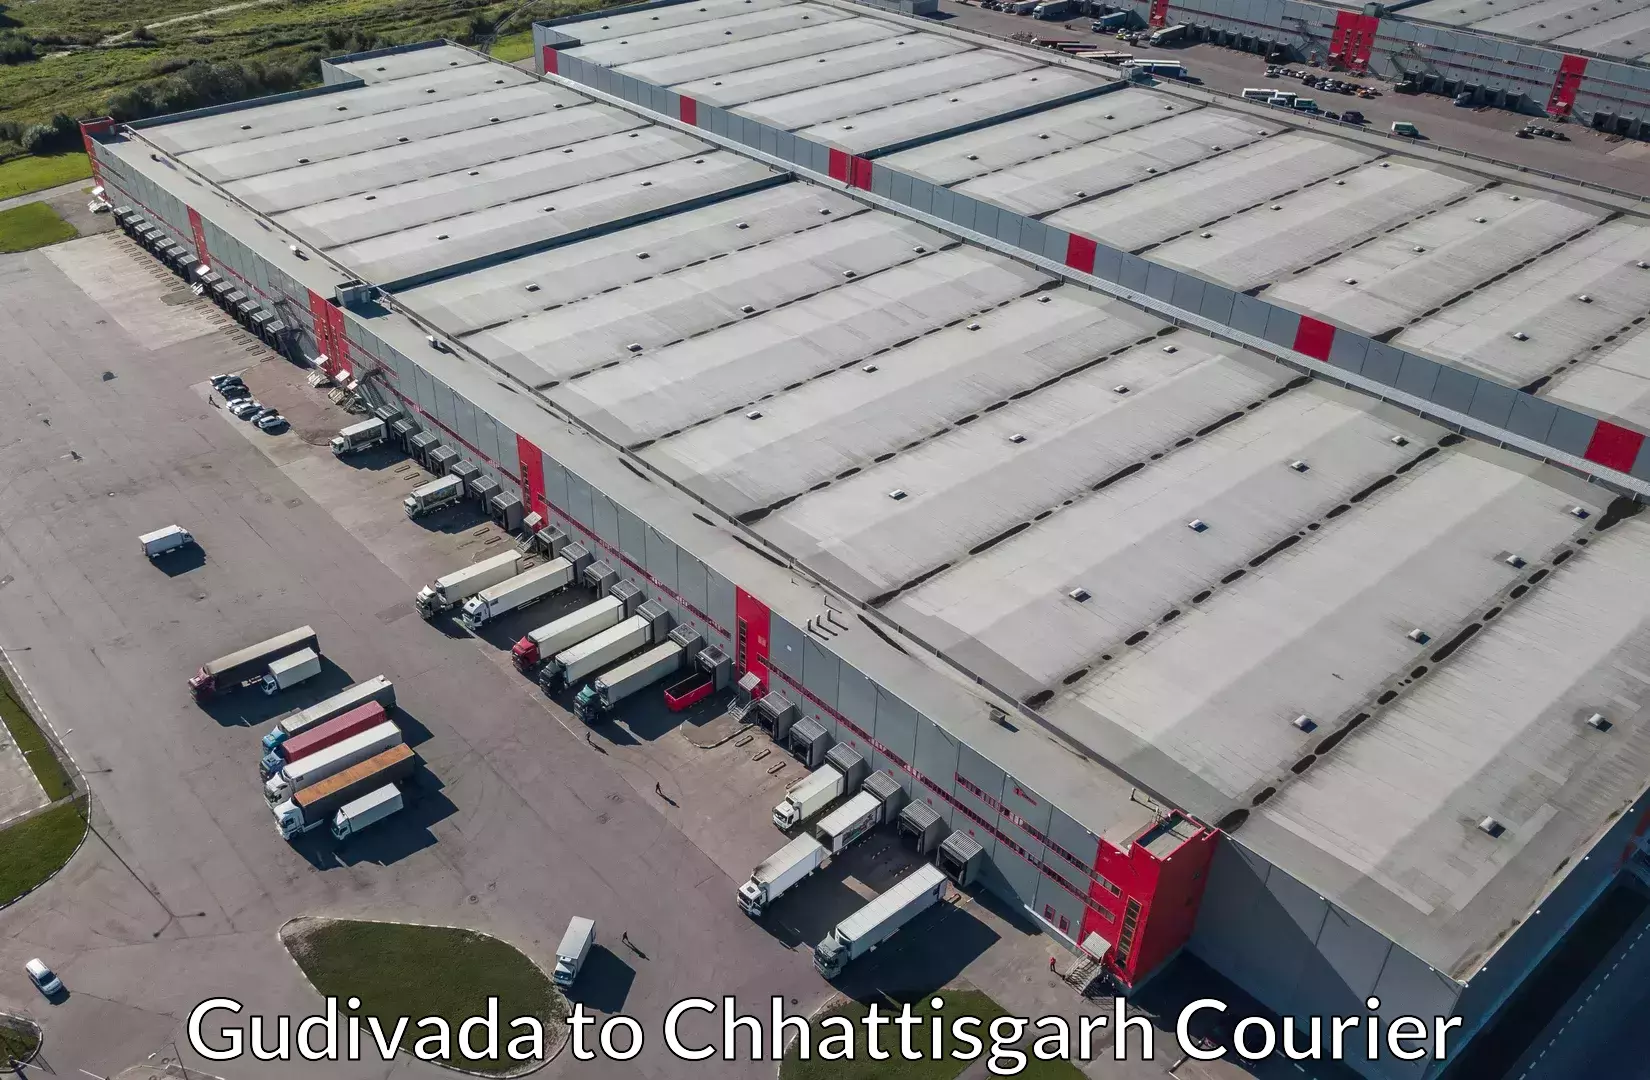 Reliable relocation services in Gudivada to Chhattisgarh